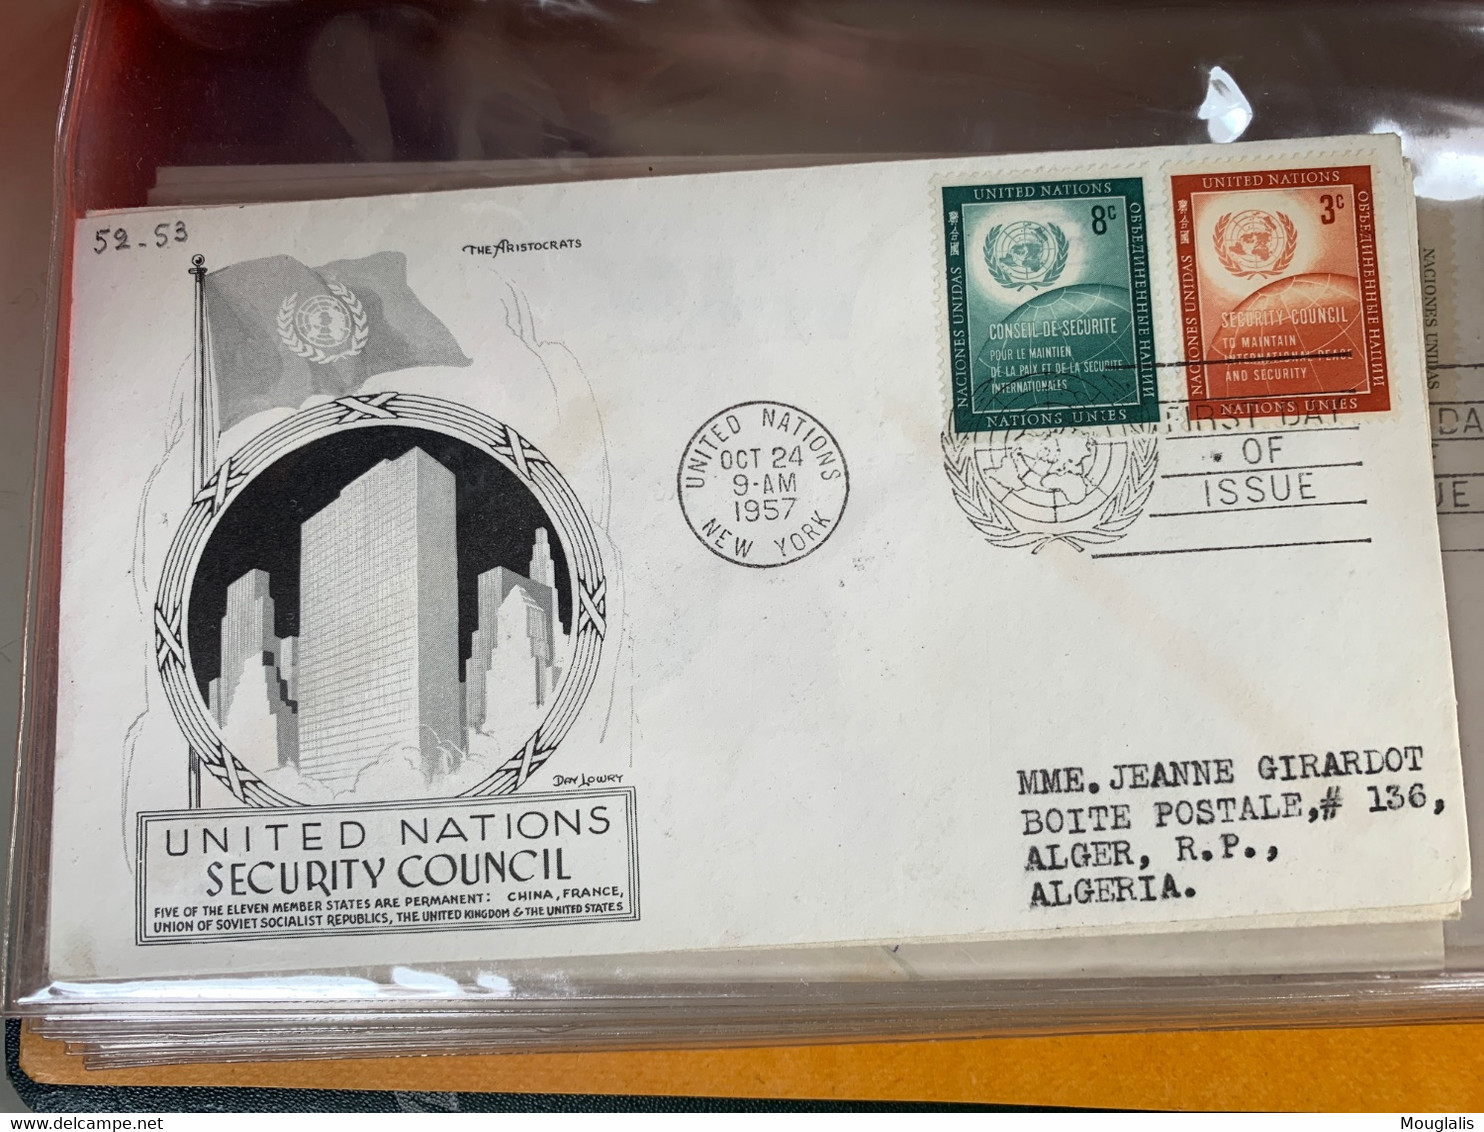 Rare ! ALBUM collection de 72 FDC NATIONS UNIES UNITED NATIONS années 1950 à 1960 New York enveloppe illustrée, à voir !